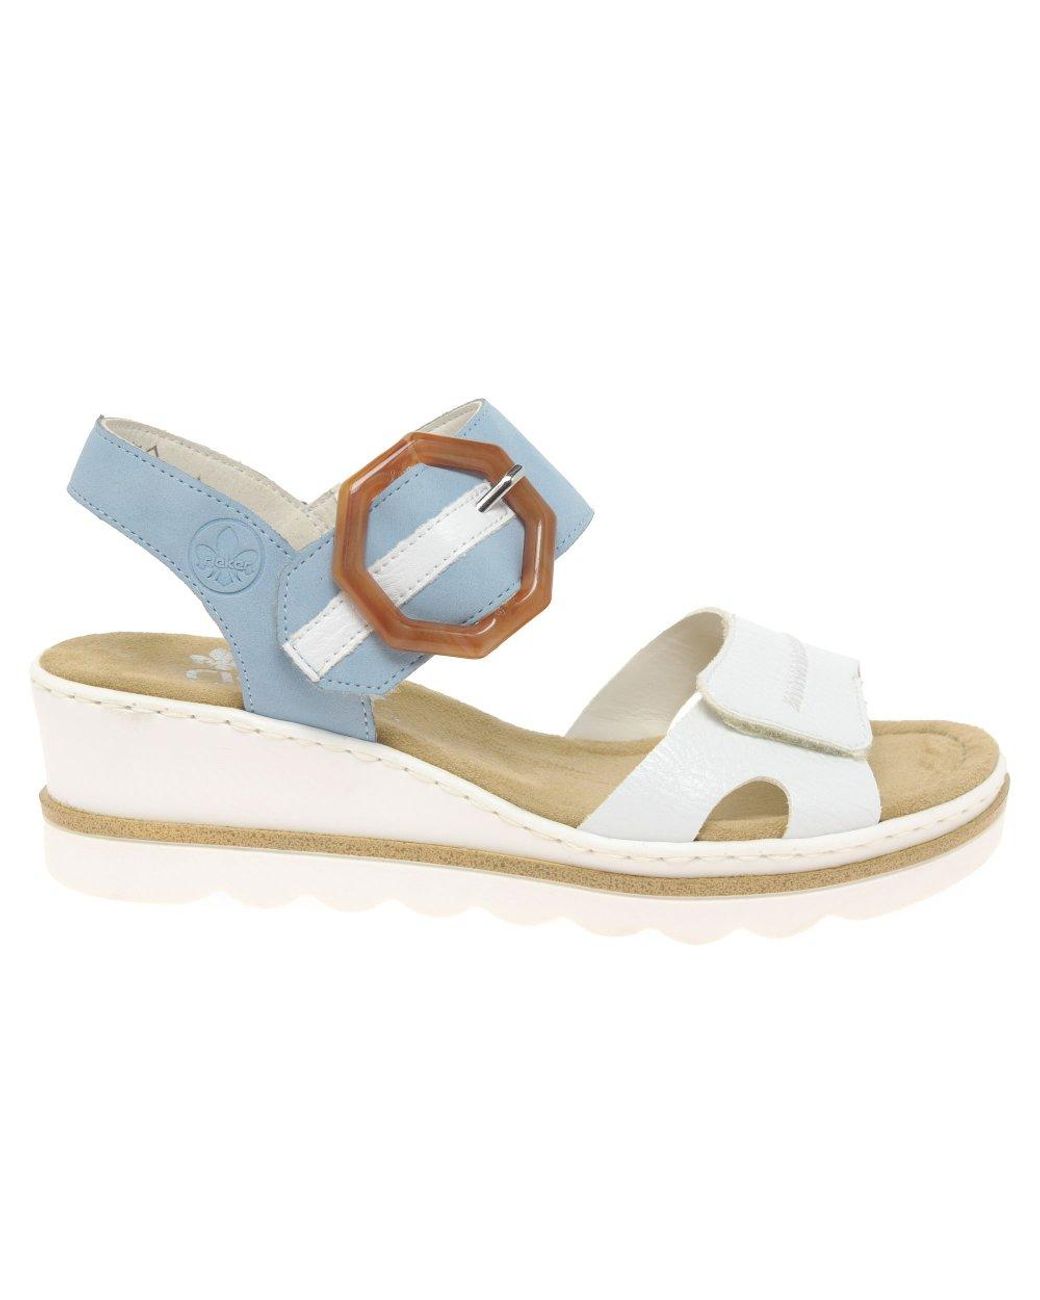 Rieker Jena Wedge Heel Sandals in White/Light Blue (Blue) | Lyst Australia